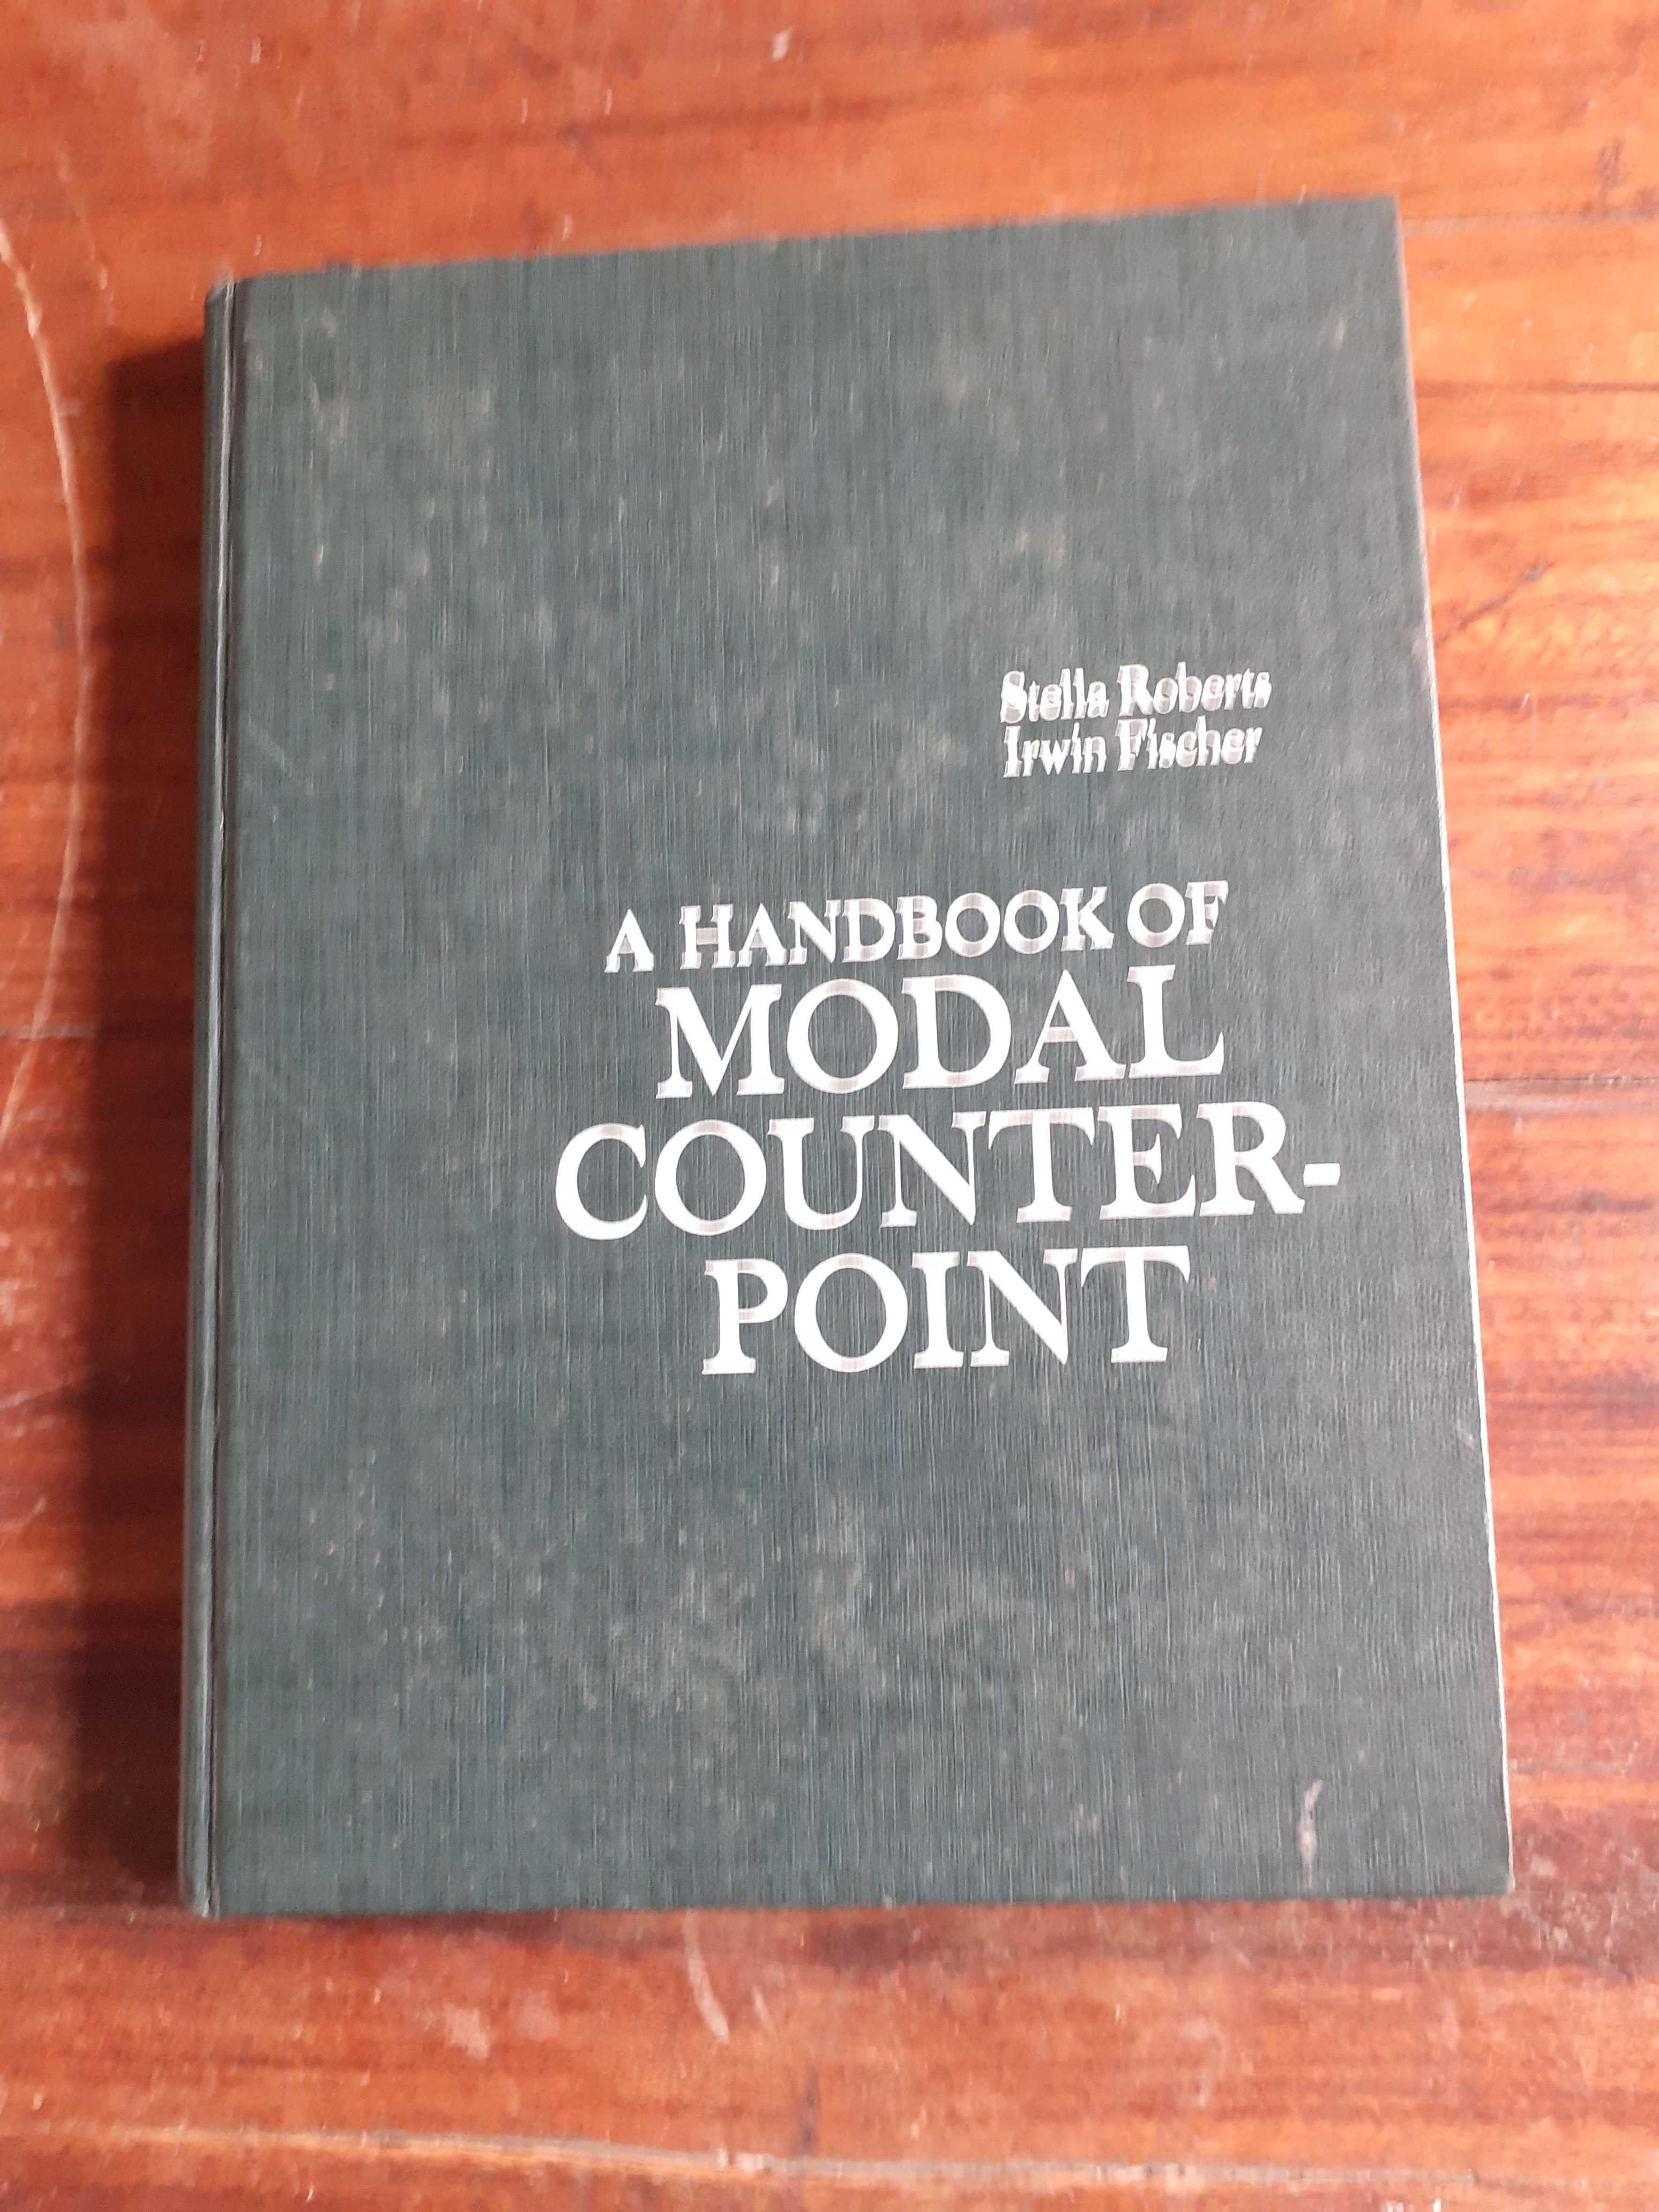 Handbook of Modal Counterpointer